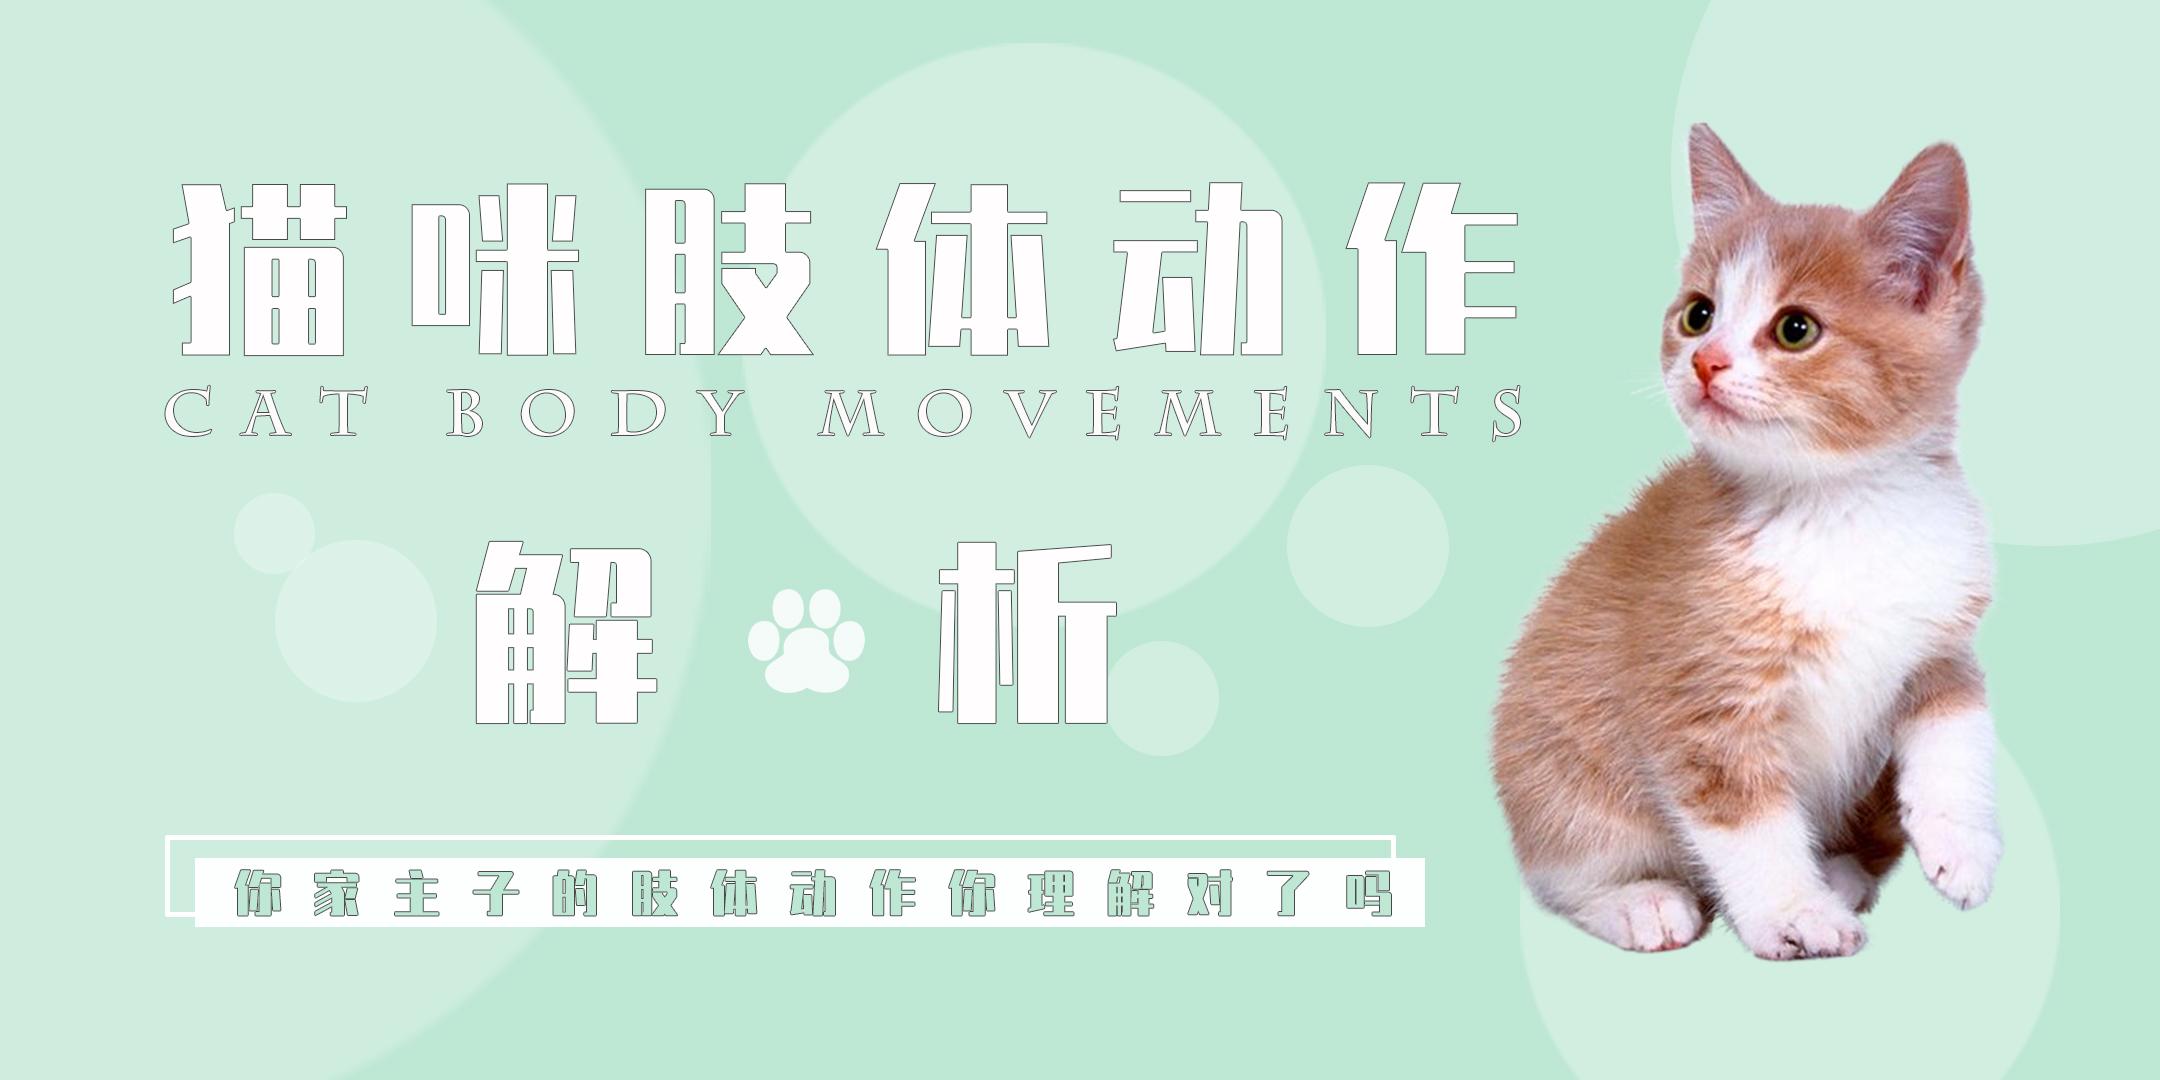 猫的动作姿势画法 作画建模参考合集 2 - 学院 - 摸鱼网 - Σ(っ °Д °;)っ 让世界更萌~ mooyuu.com